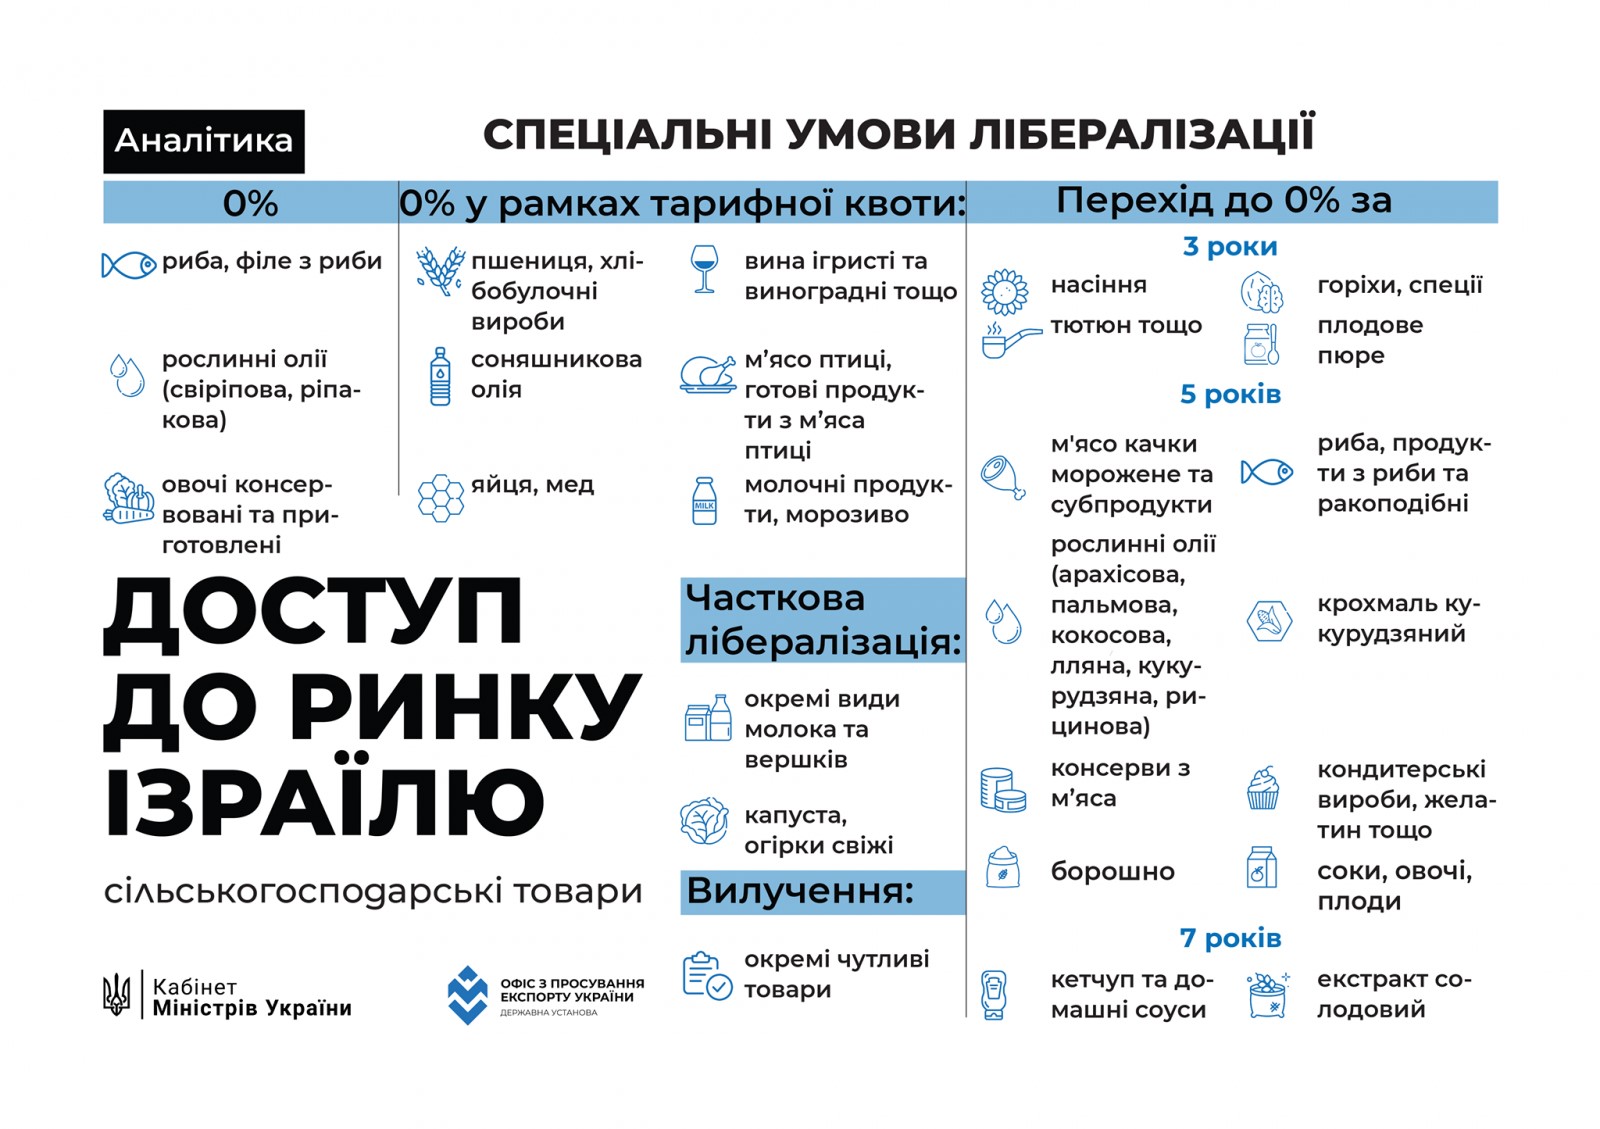 Угода про зону вільної торгівлі між Україною та Державою Ізраїль в інфографіці